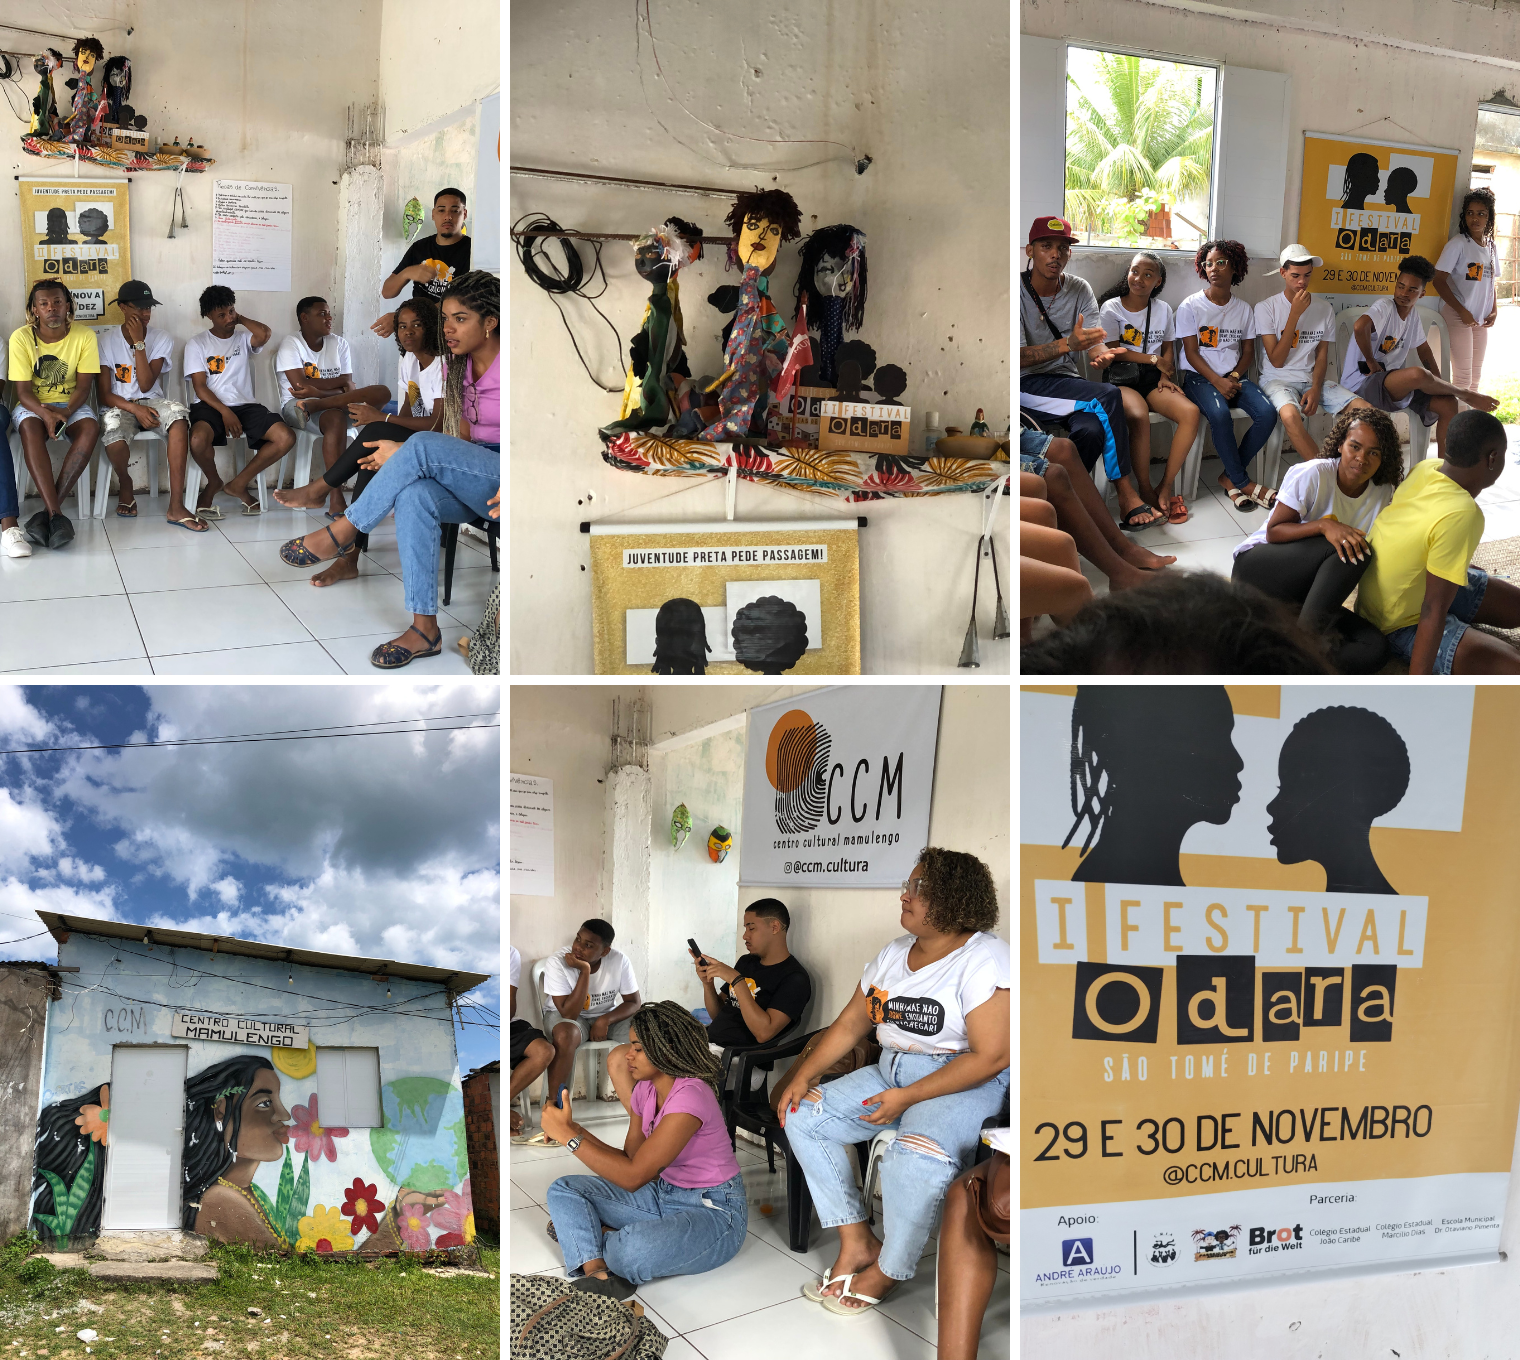 Fundação Abrinq fortalece 11 novos coletivos periféricos em prol dos direitos de crianças e adolescentes no Brasil